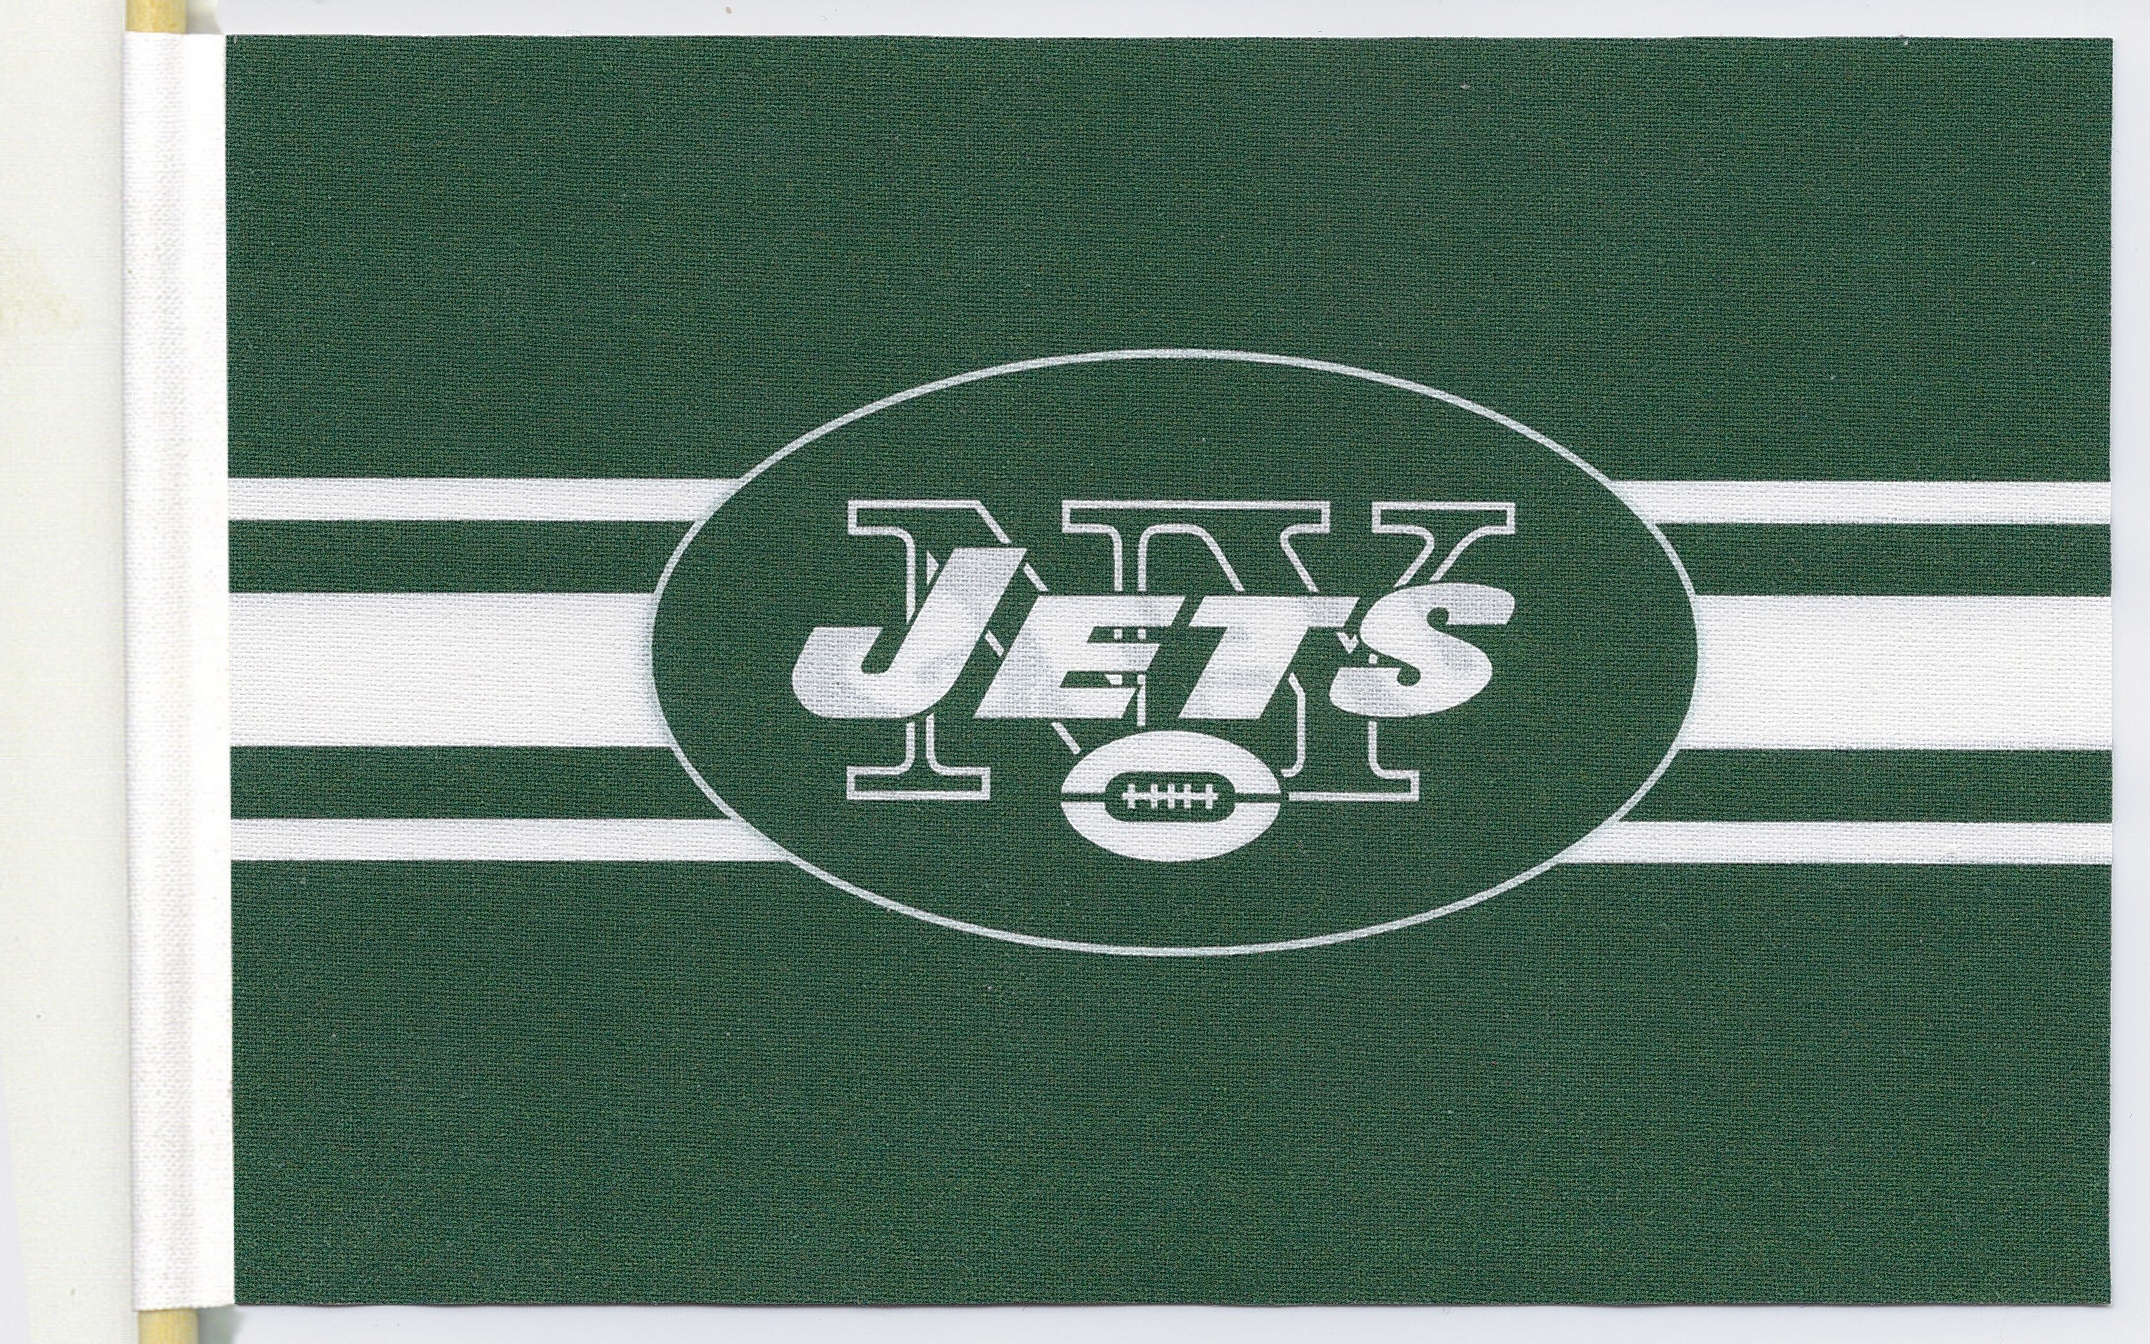 new york jets flag